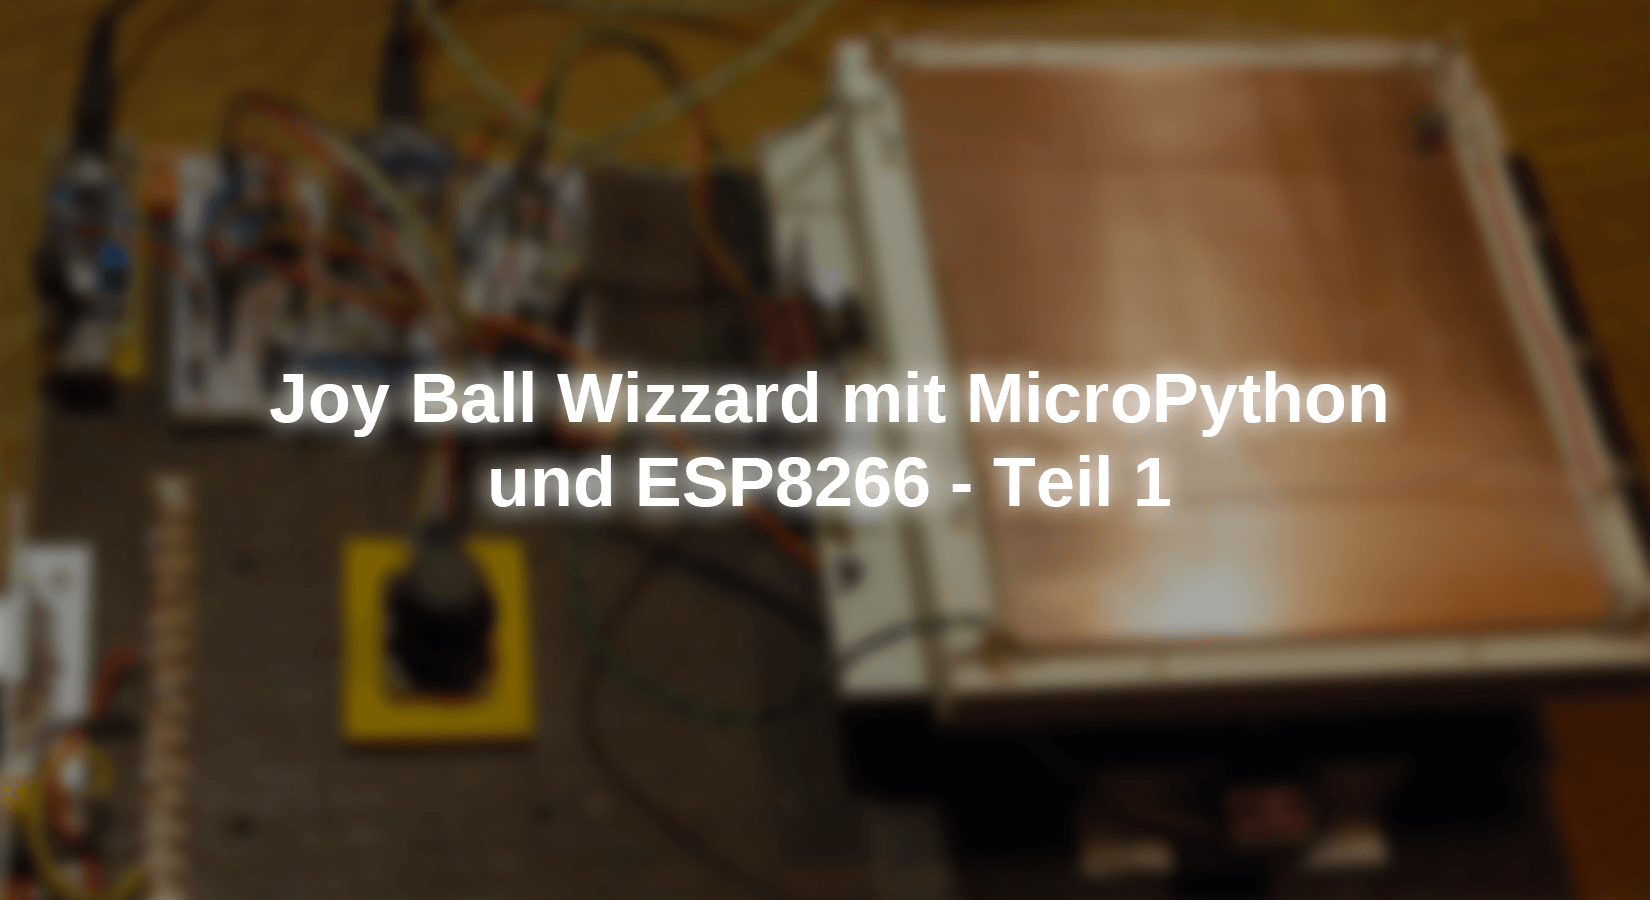 Joy Ball Wizzard mit MicroPython und ESP8266 - Teil 1 - AZ-Delivery